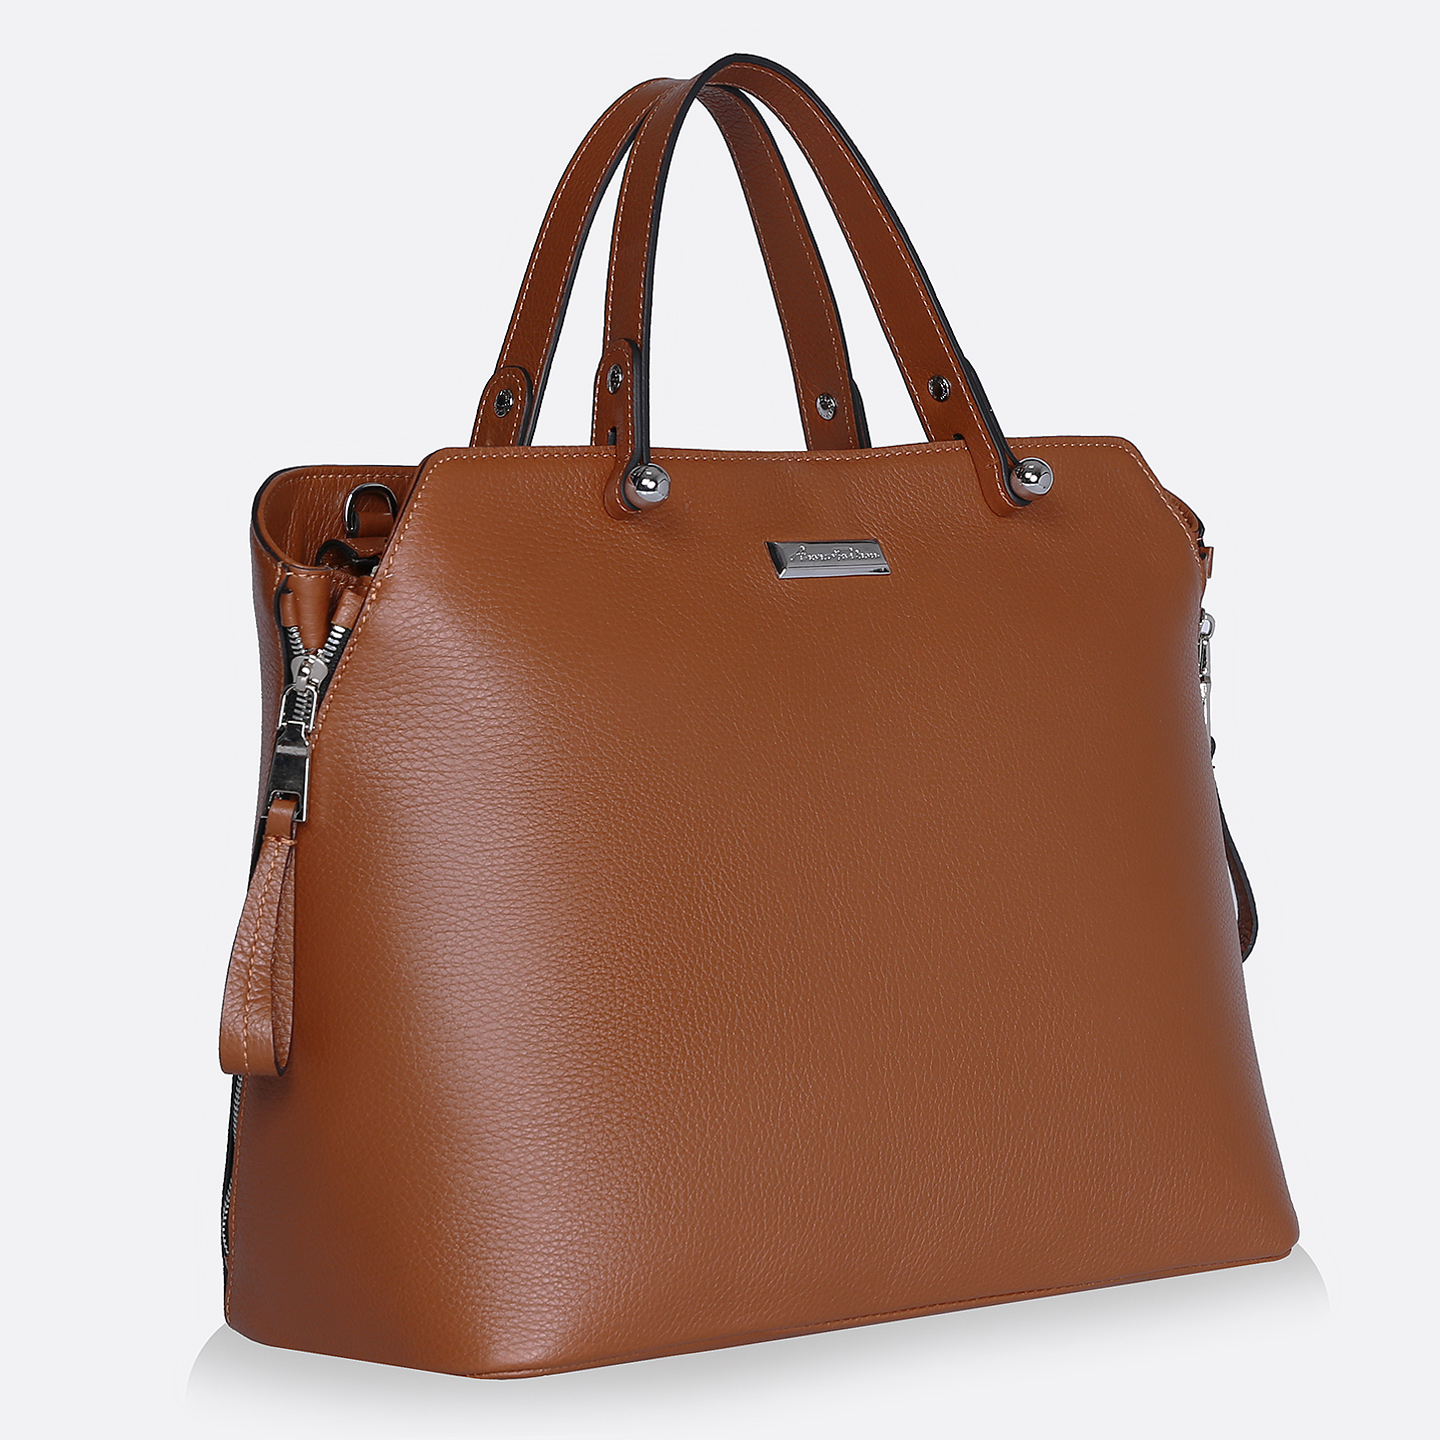 Коричневая сумка большая. Сумка женская Polar 50010121, коричневый. Azaro сумки. Сумочка Azaro коричневый. Сумка женская коричневая классическая.